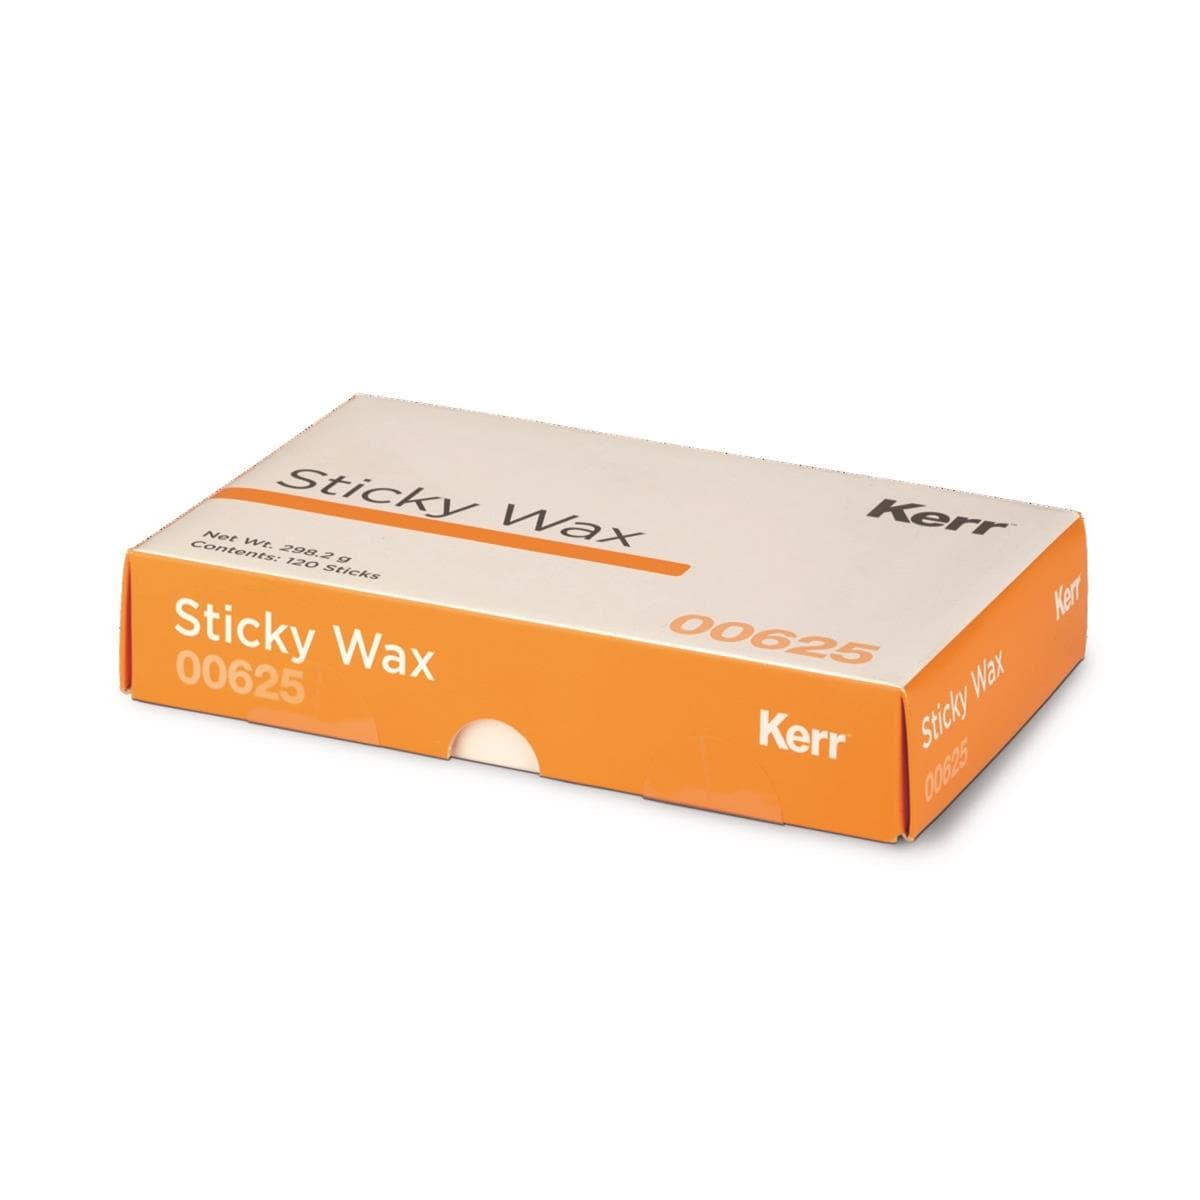 Sticky Wax KERR - La bote de 120 btons